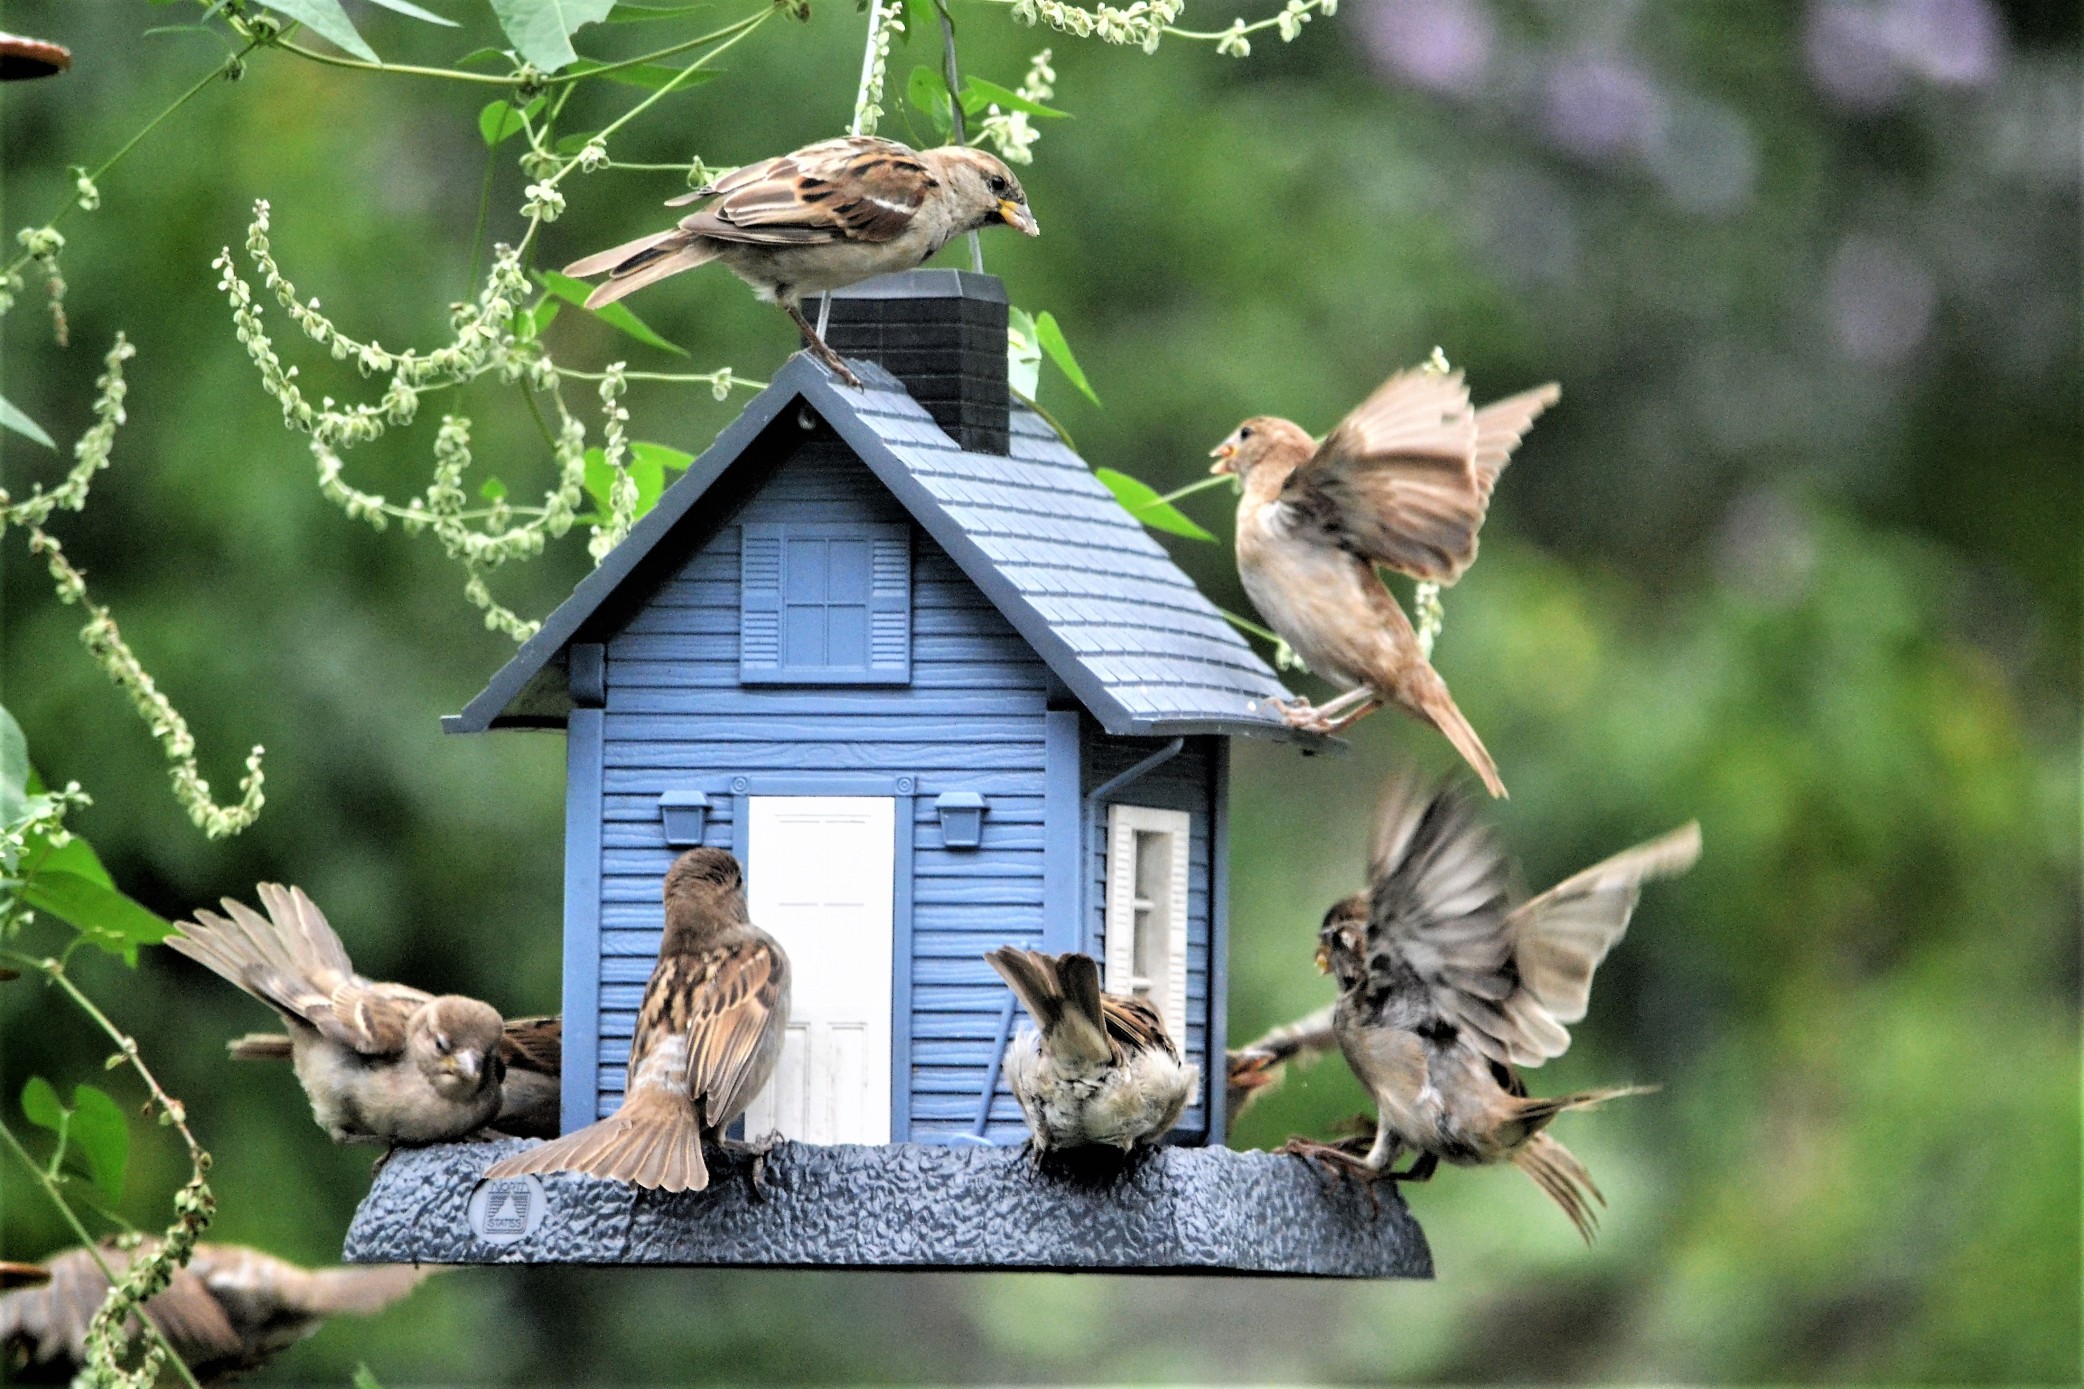 Vogelfutter - ideal für das eigene Vogelhaus im Garten Bild: @maginnis via Twenty20